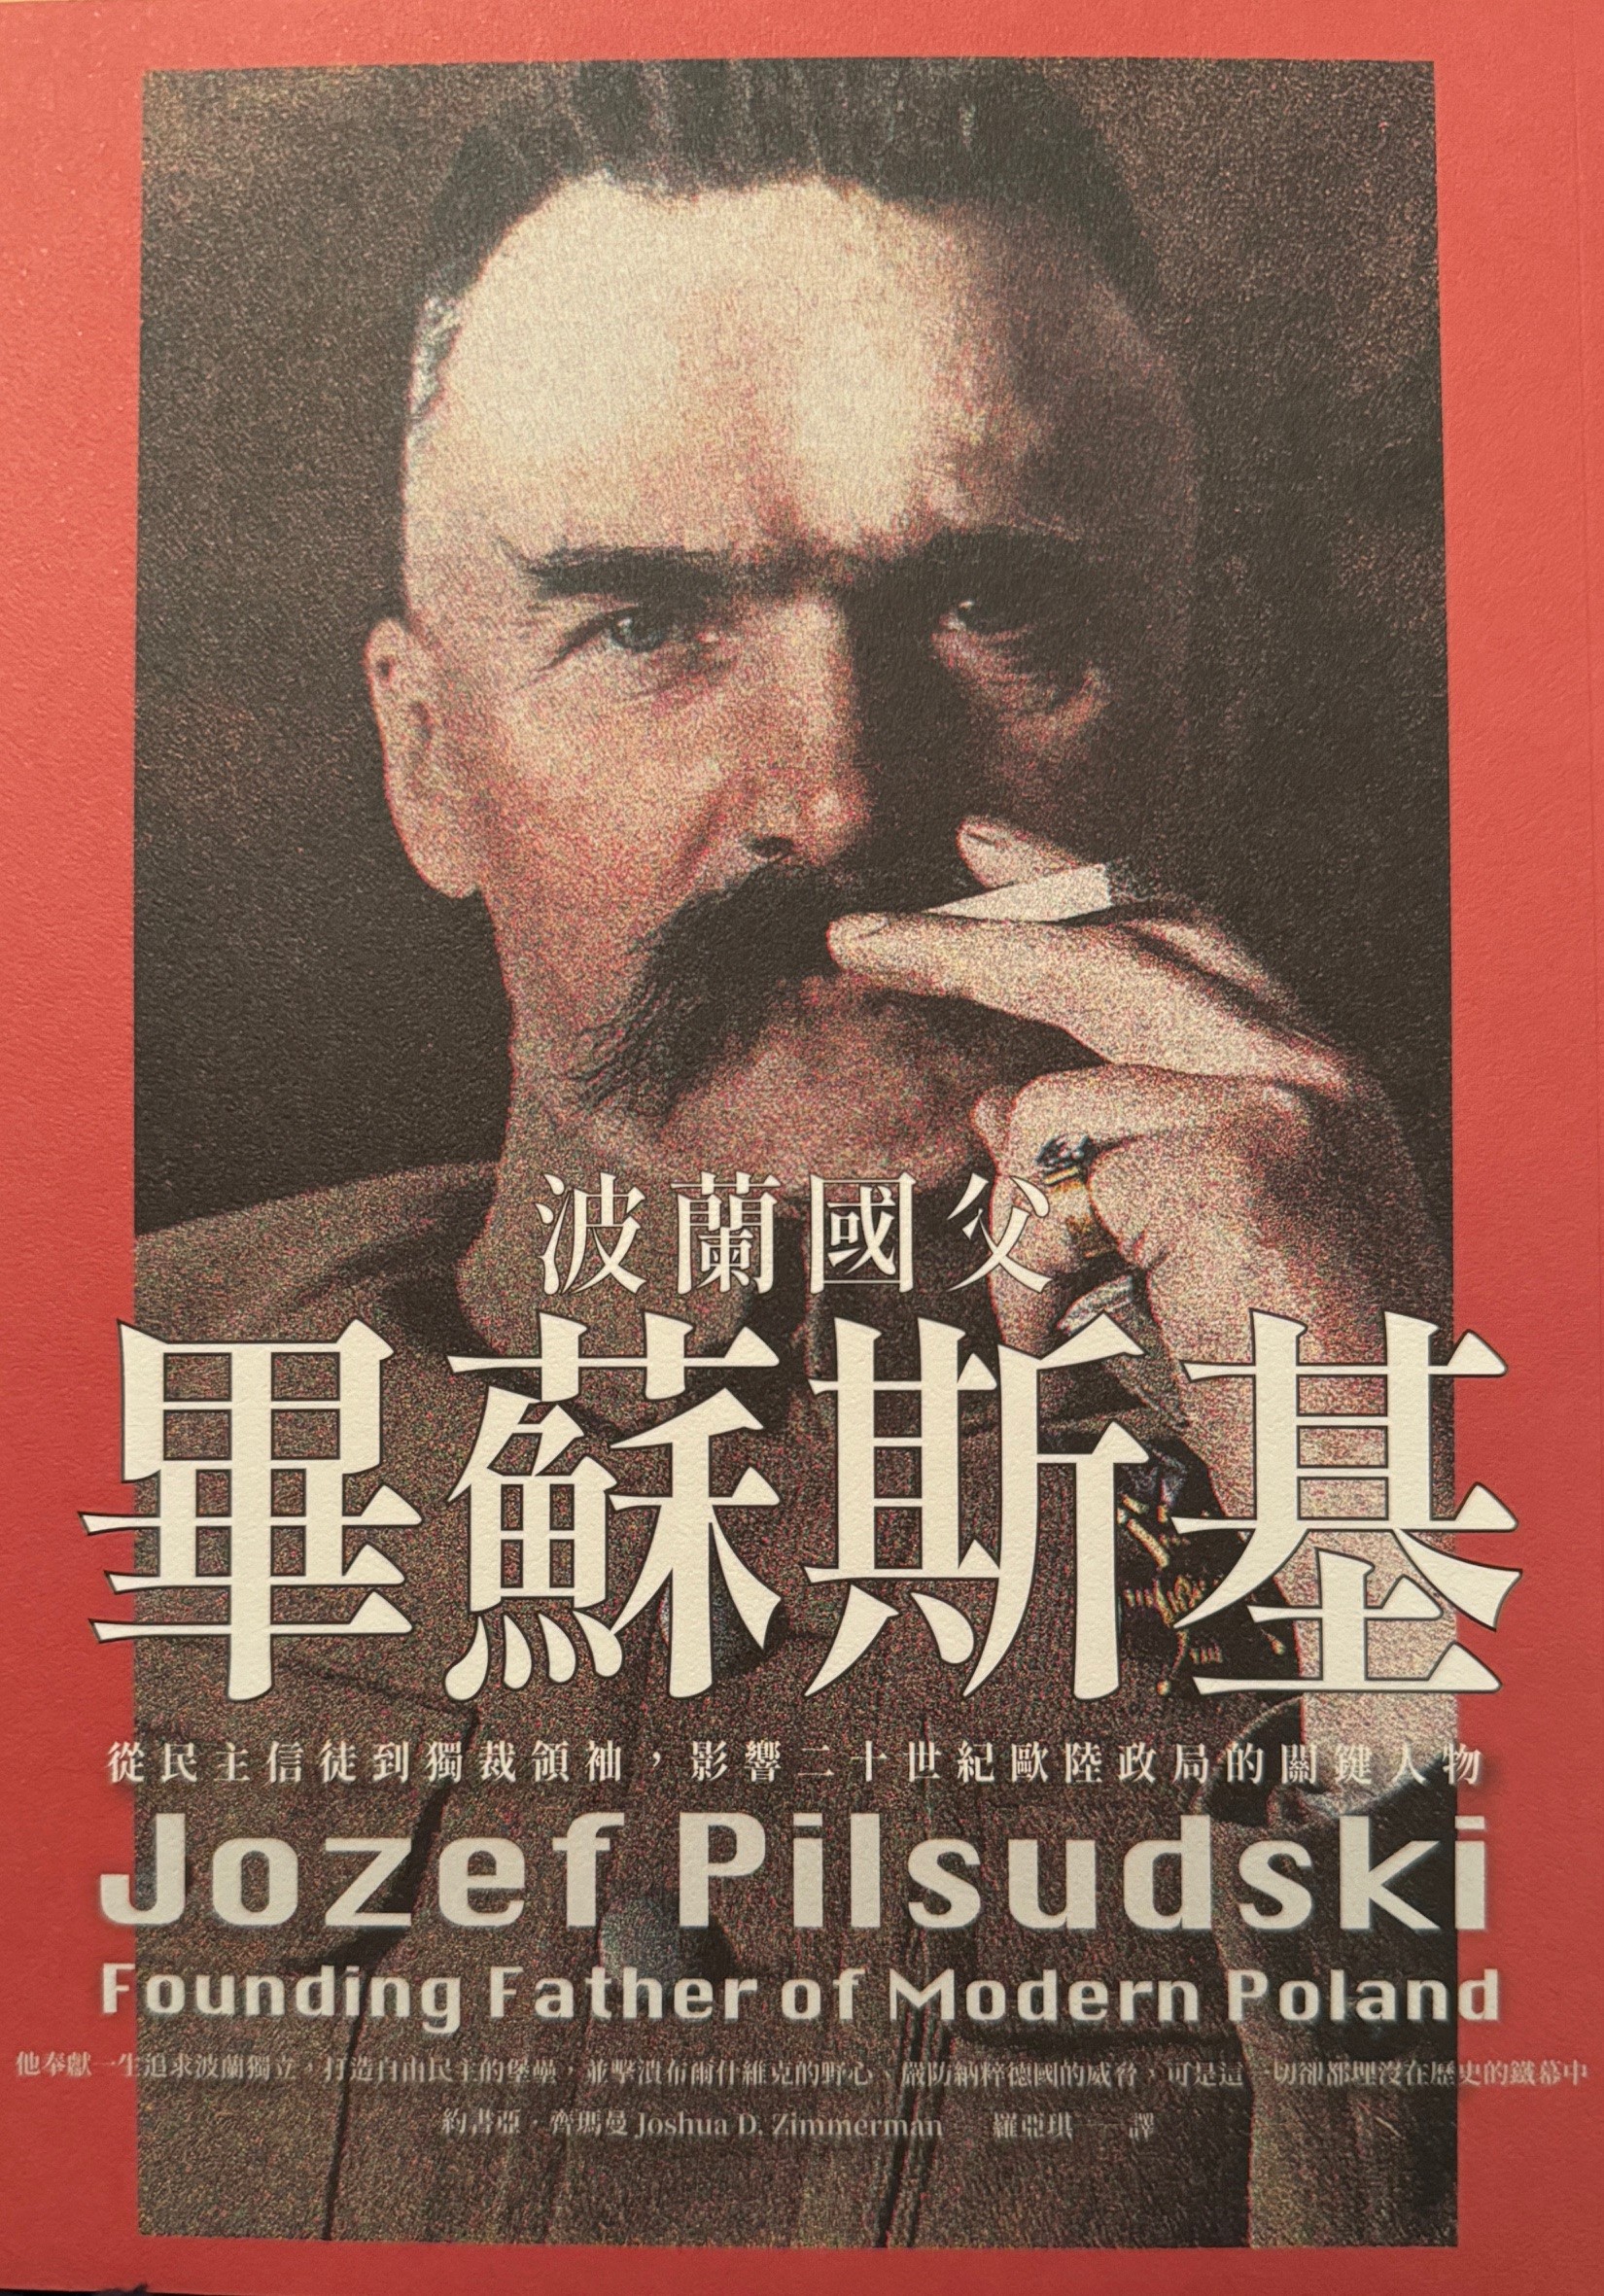 Książka profesora YU o polskim ojcu założycielu została przetłumaczona na język chiński